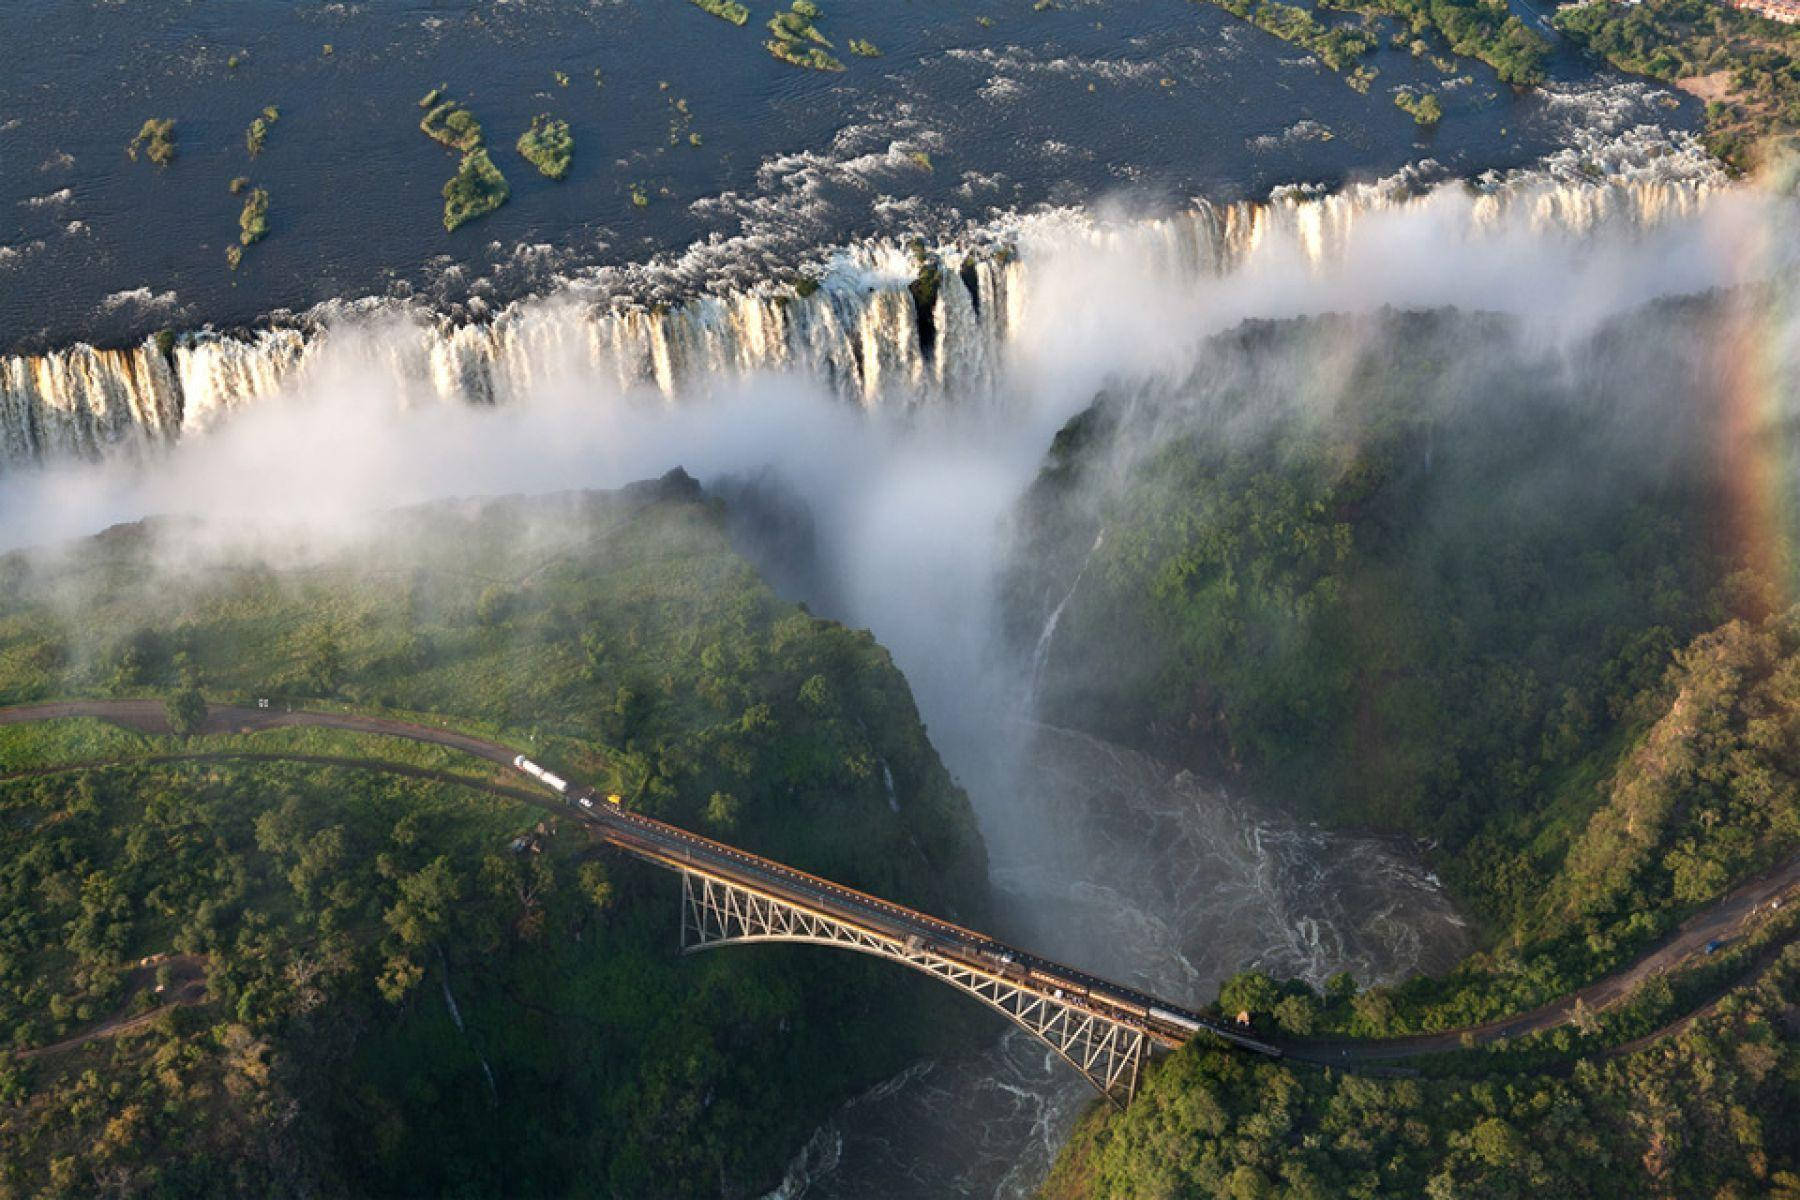 Zambia Victoria Falls Bridge Background